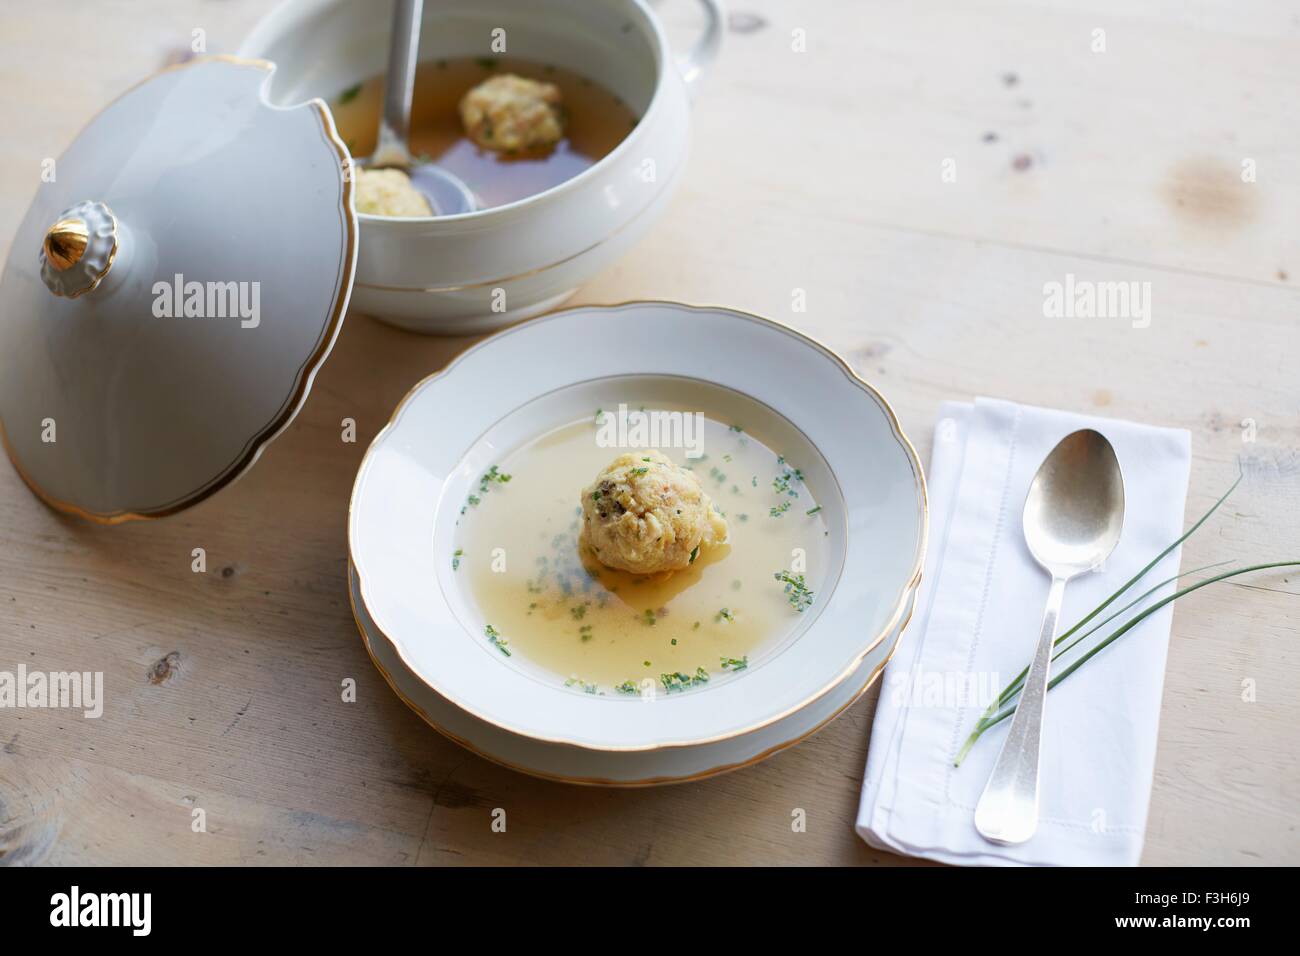 Table avec potage frais et boulette dans un bol Banque D'Images